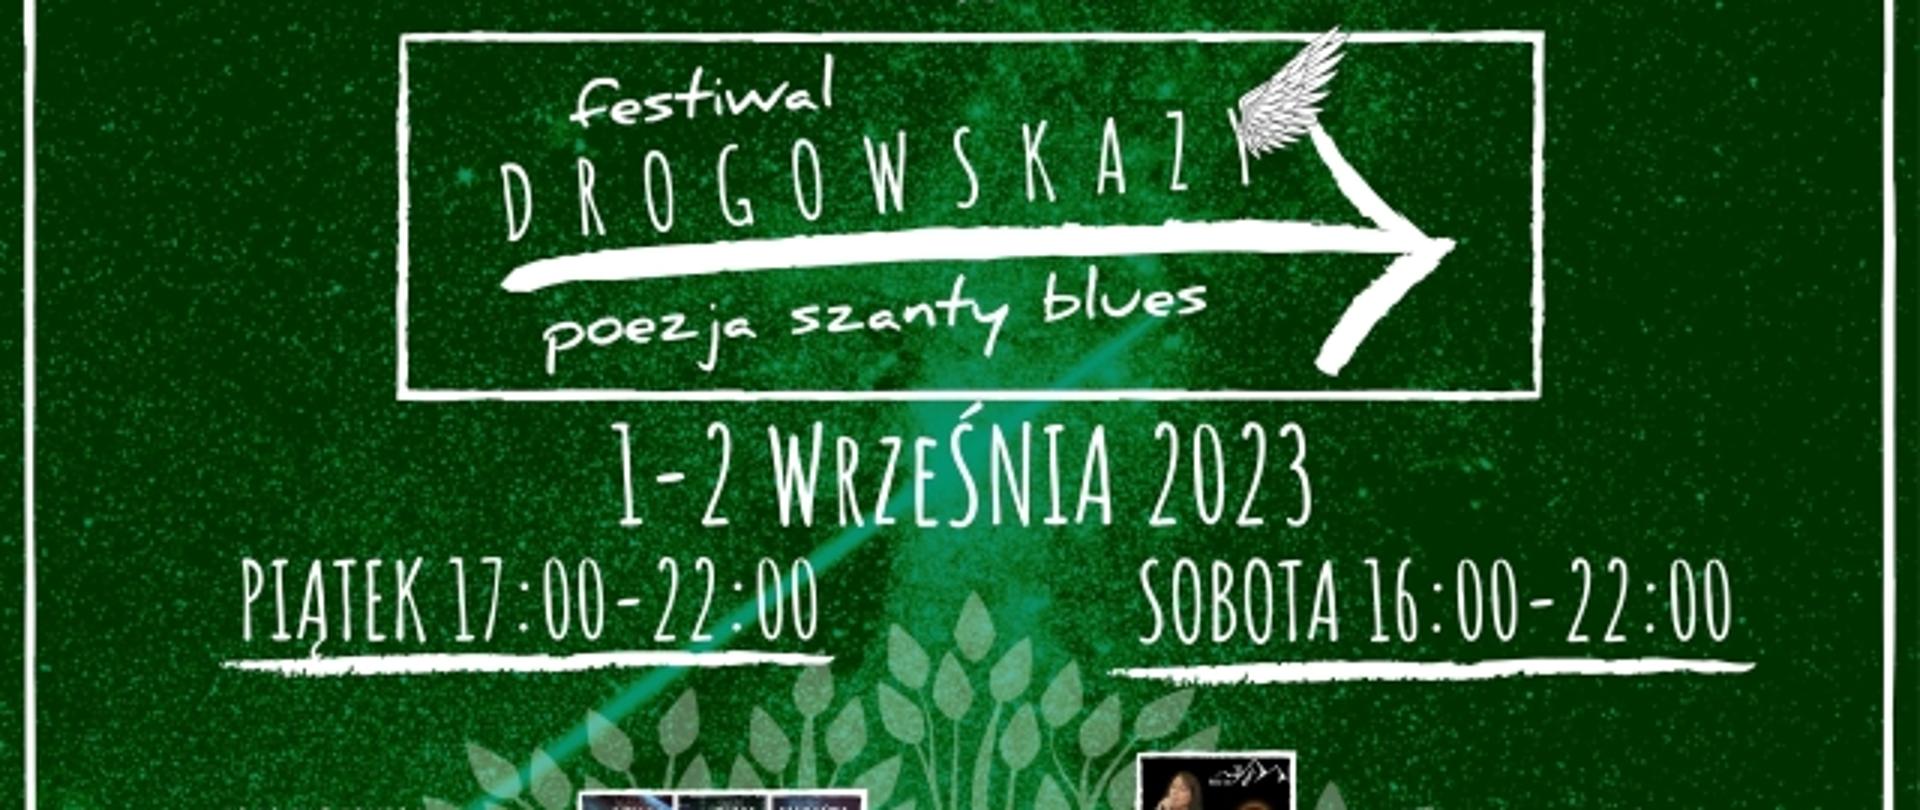 Drogowskazy - zaproszenie